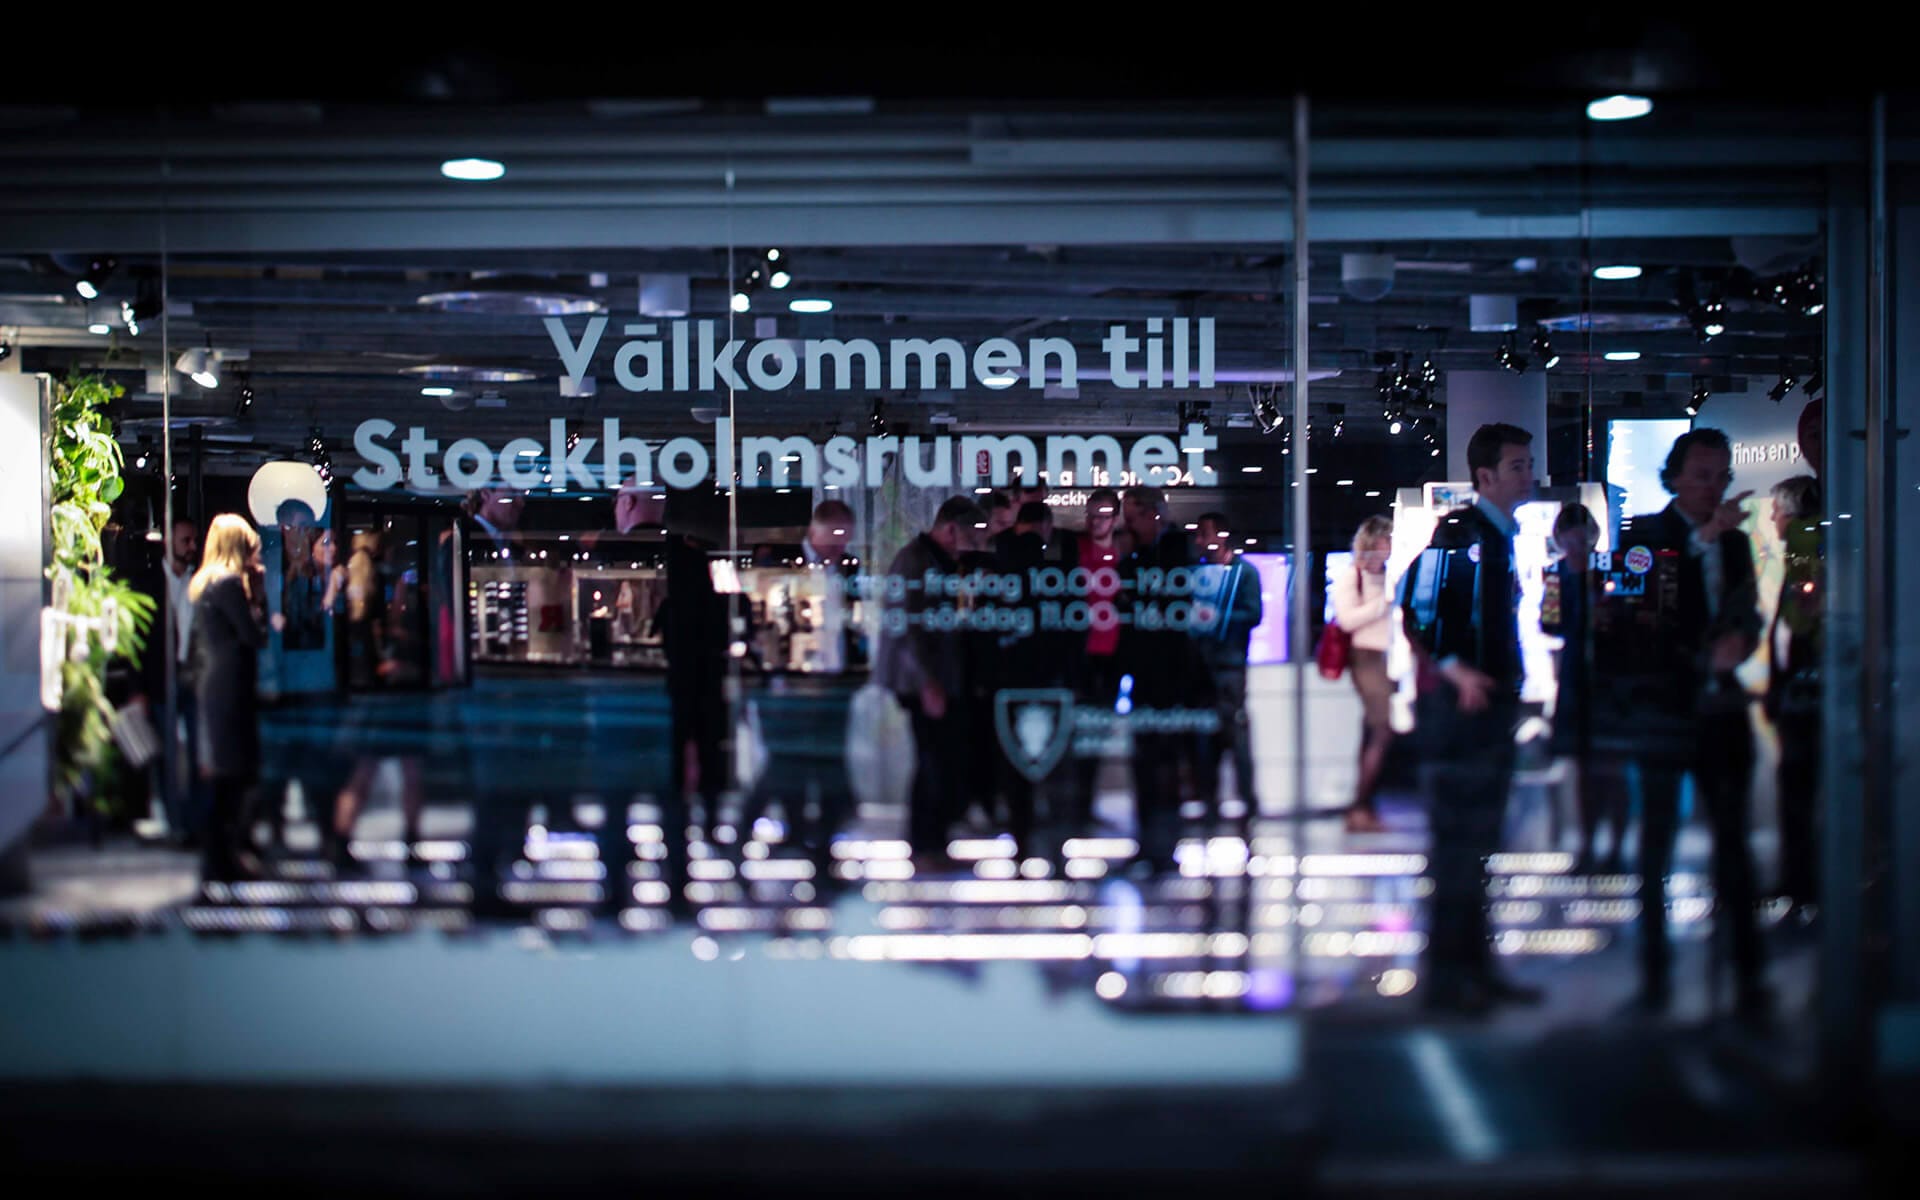 Stockholmsrummet är en utställning på Kulturhuset